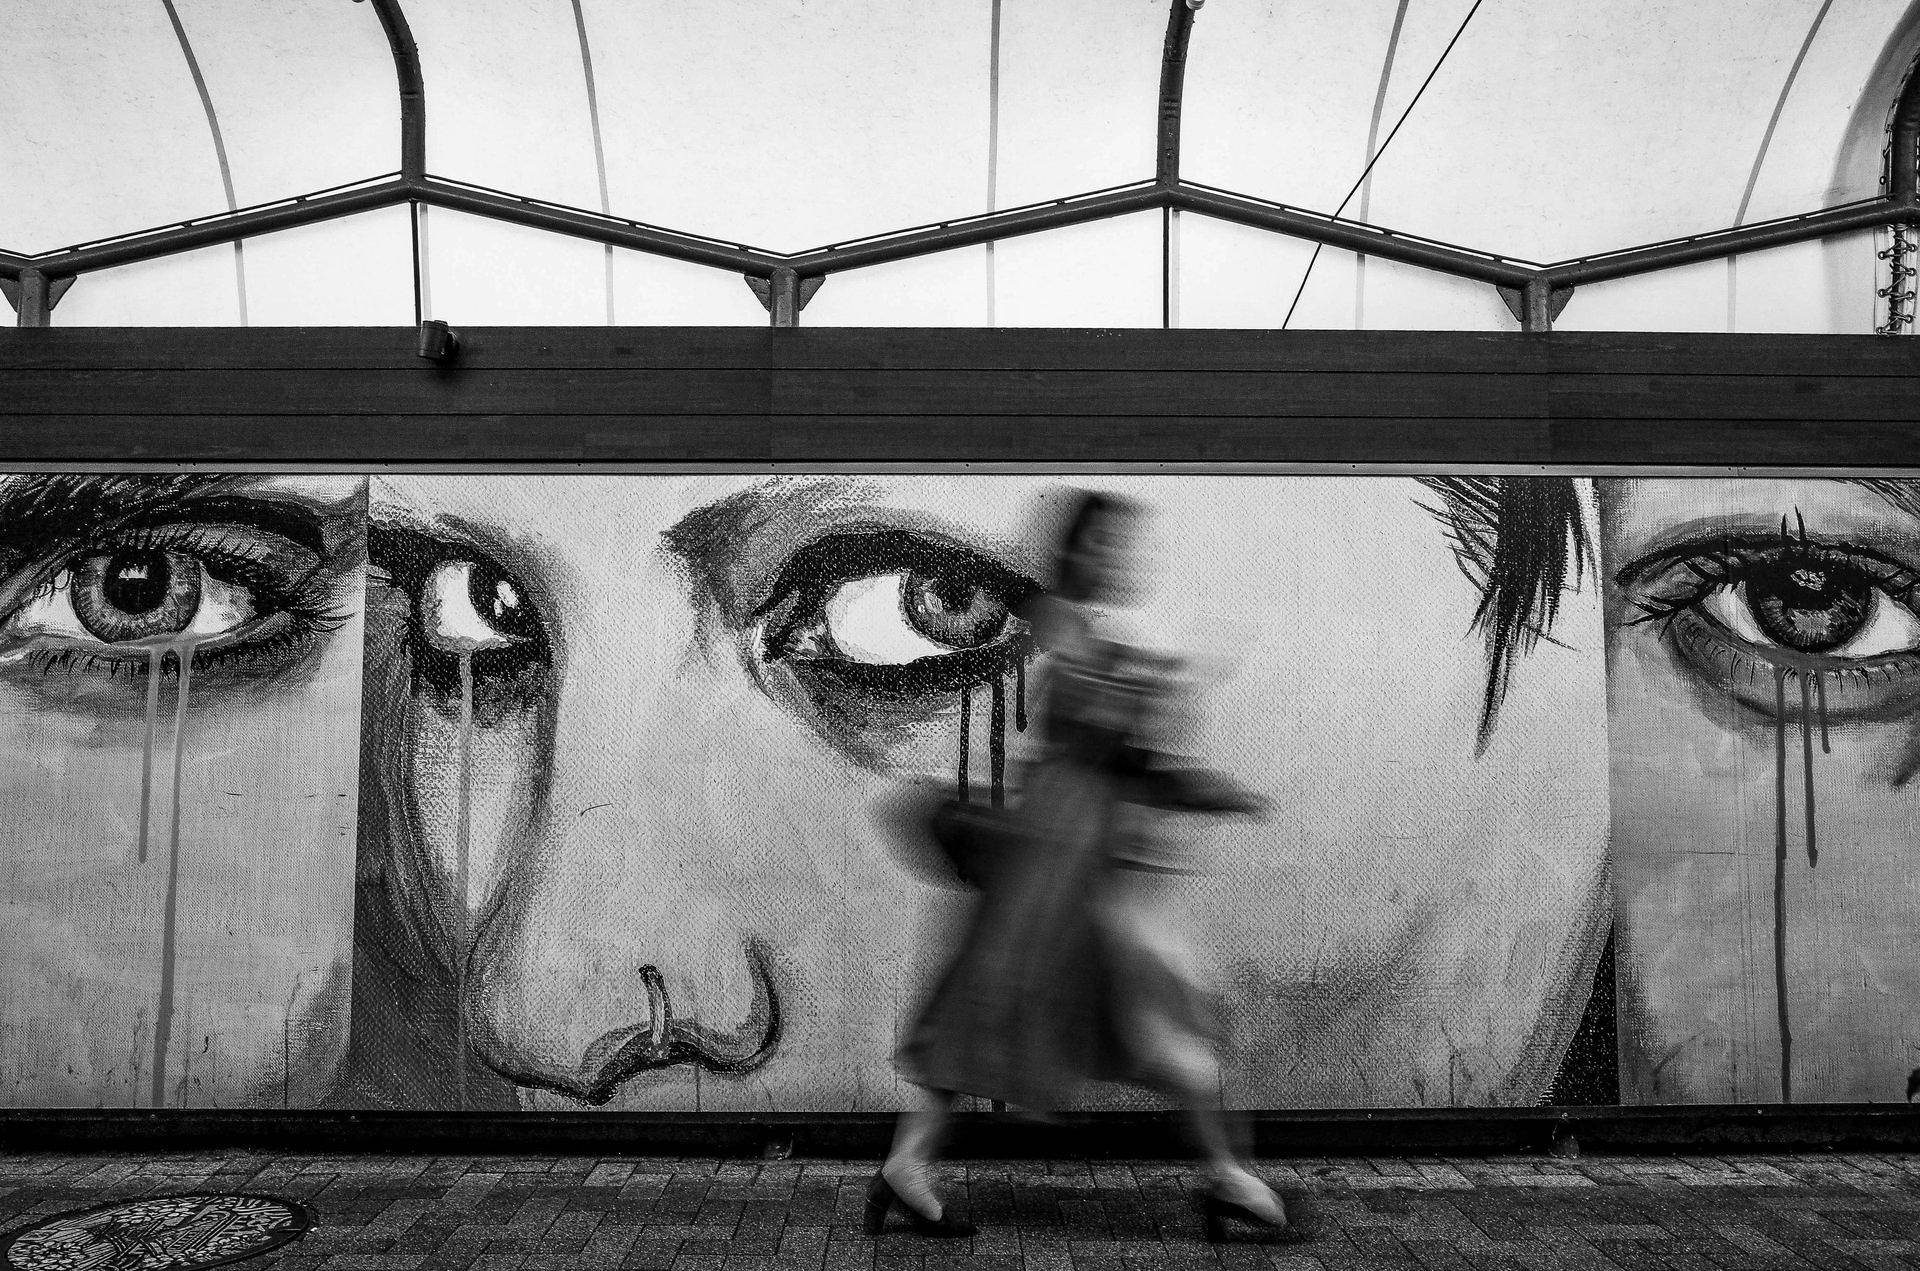 Eine Wand mit Street Art, eine Frau läuft vorbei, sie ist verschwommen fotografiert